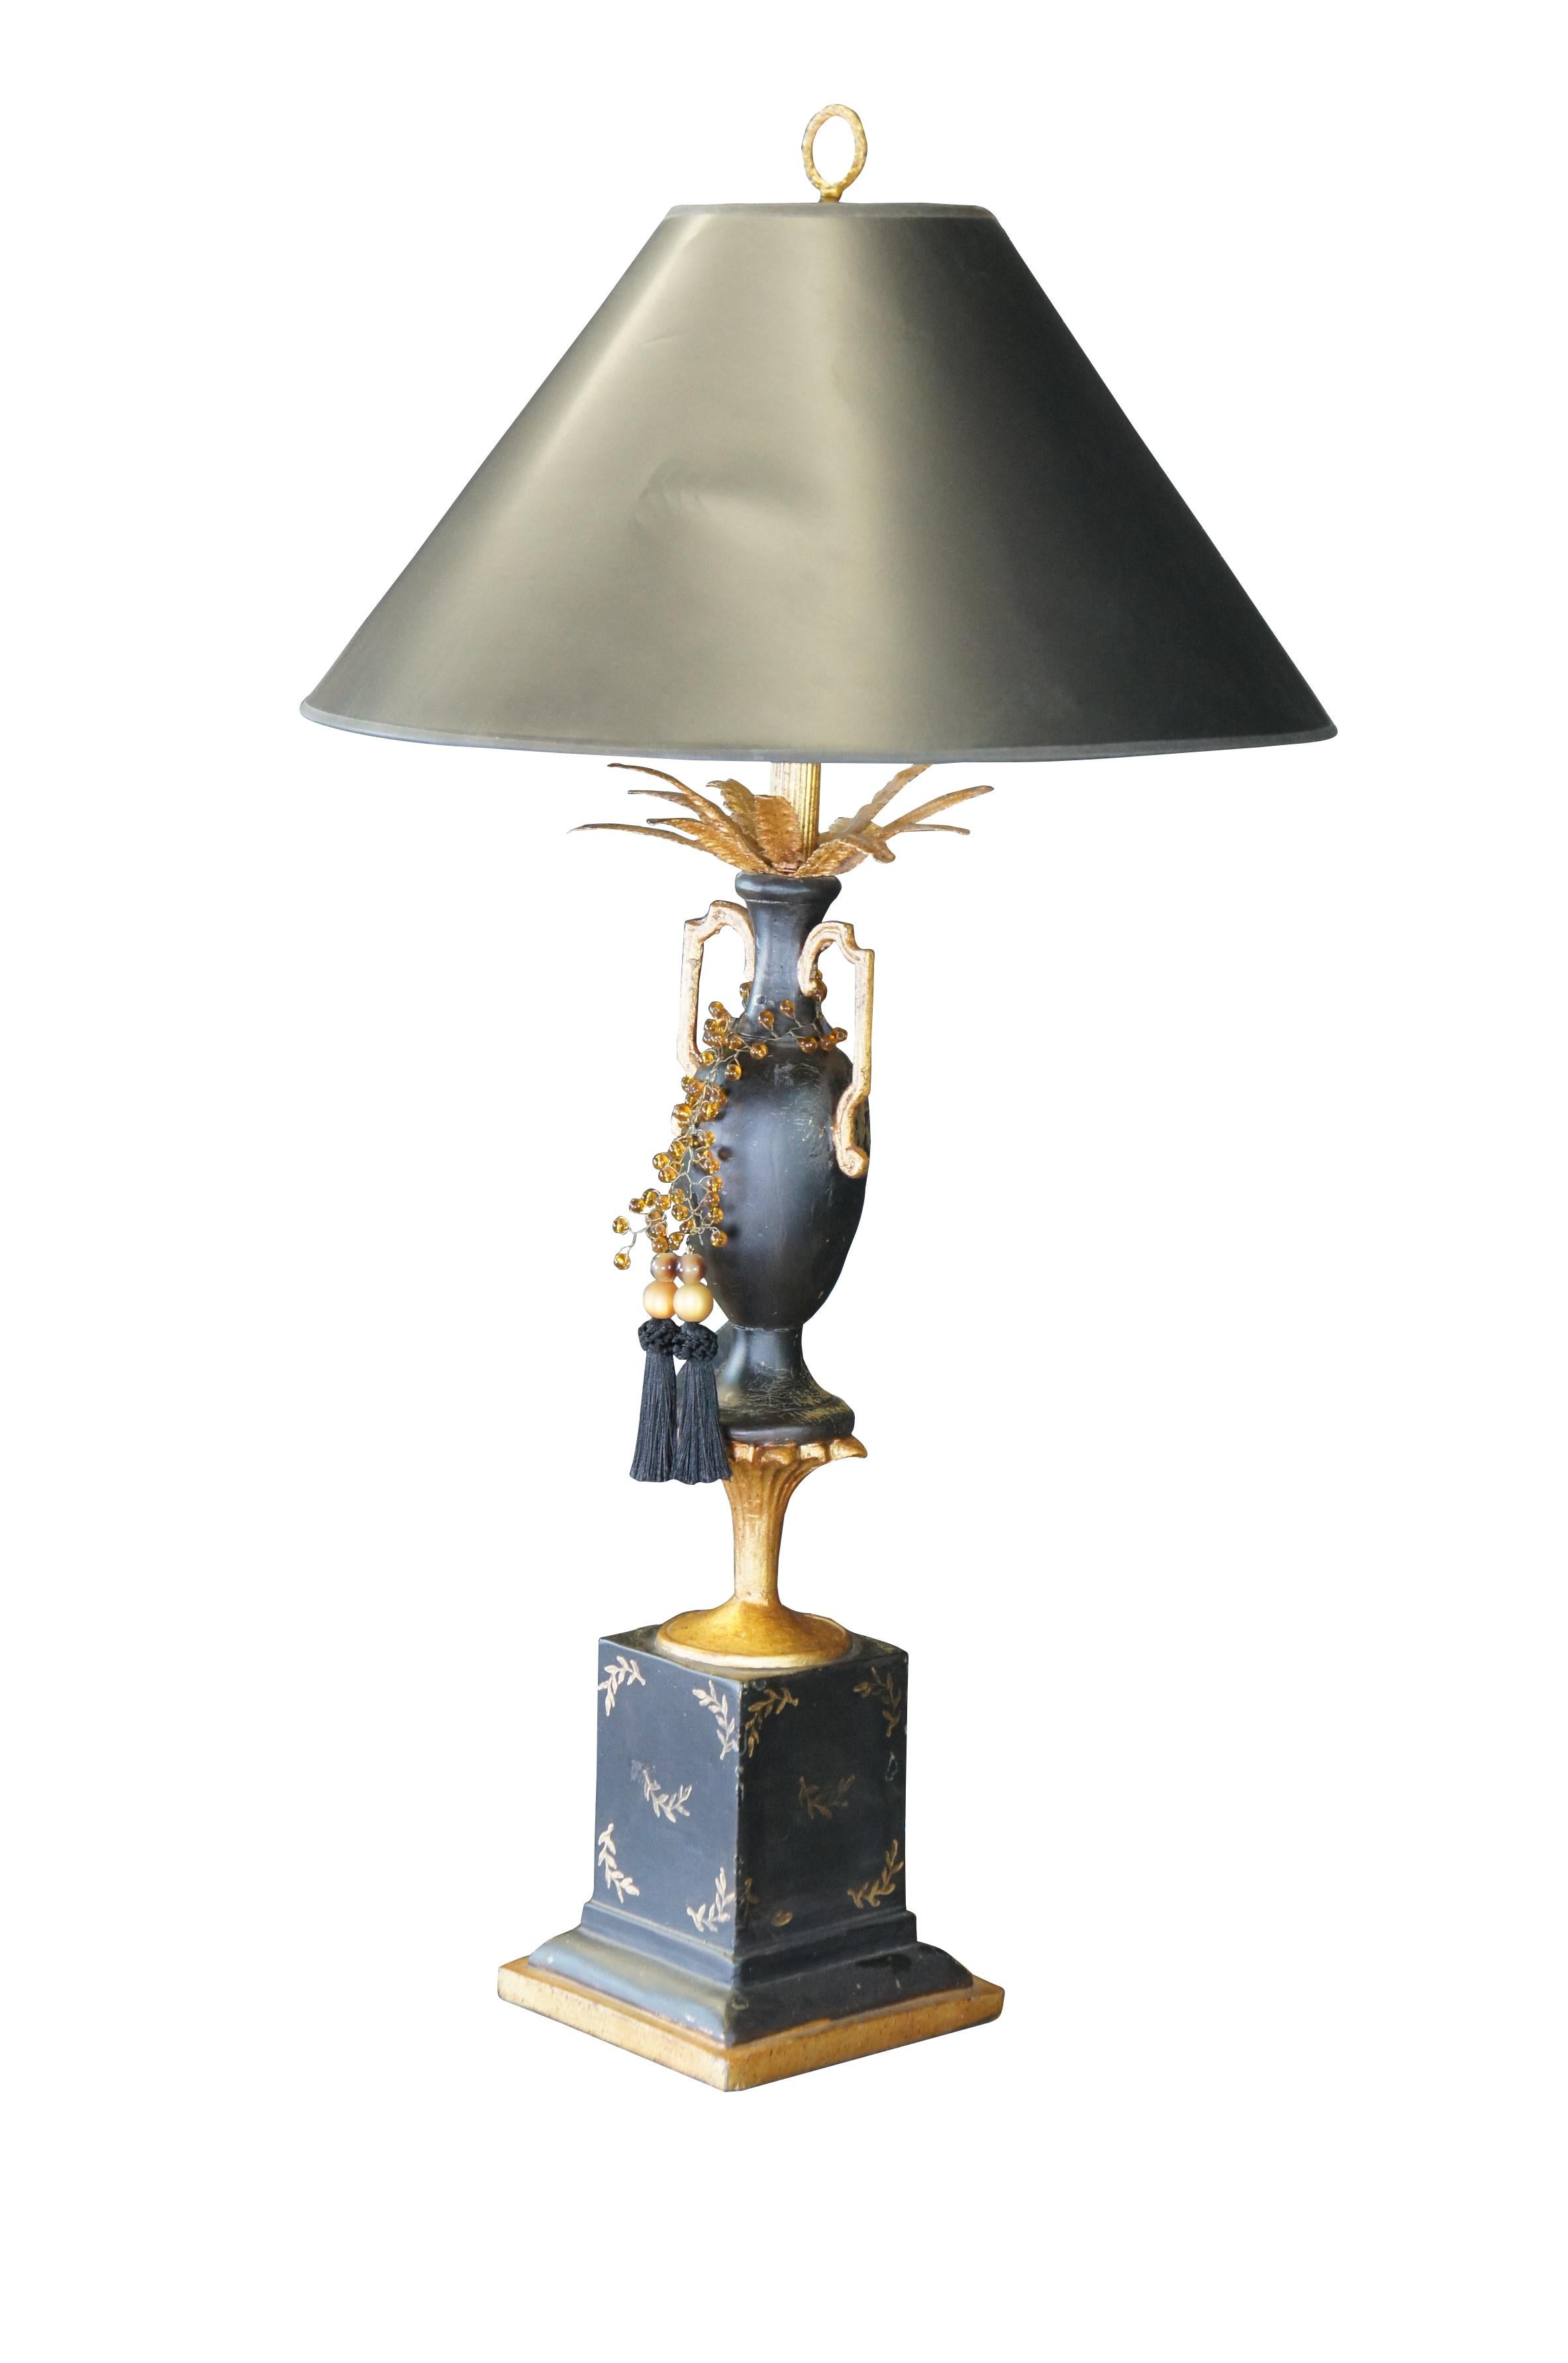 Neoklassizistische Lampe mit schwarzer und goldener Bemalung. Auf einem goldenen Sockel befindet sich eine Vase mit goldenen Federn und bernsteinfarbenen Perlenquasten.

Abmessungen: 
38 